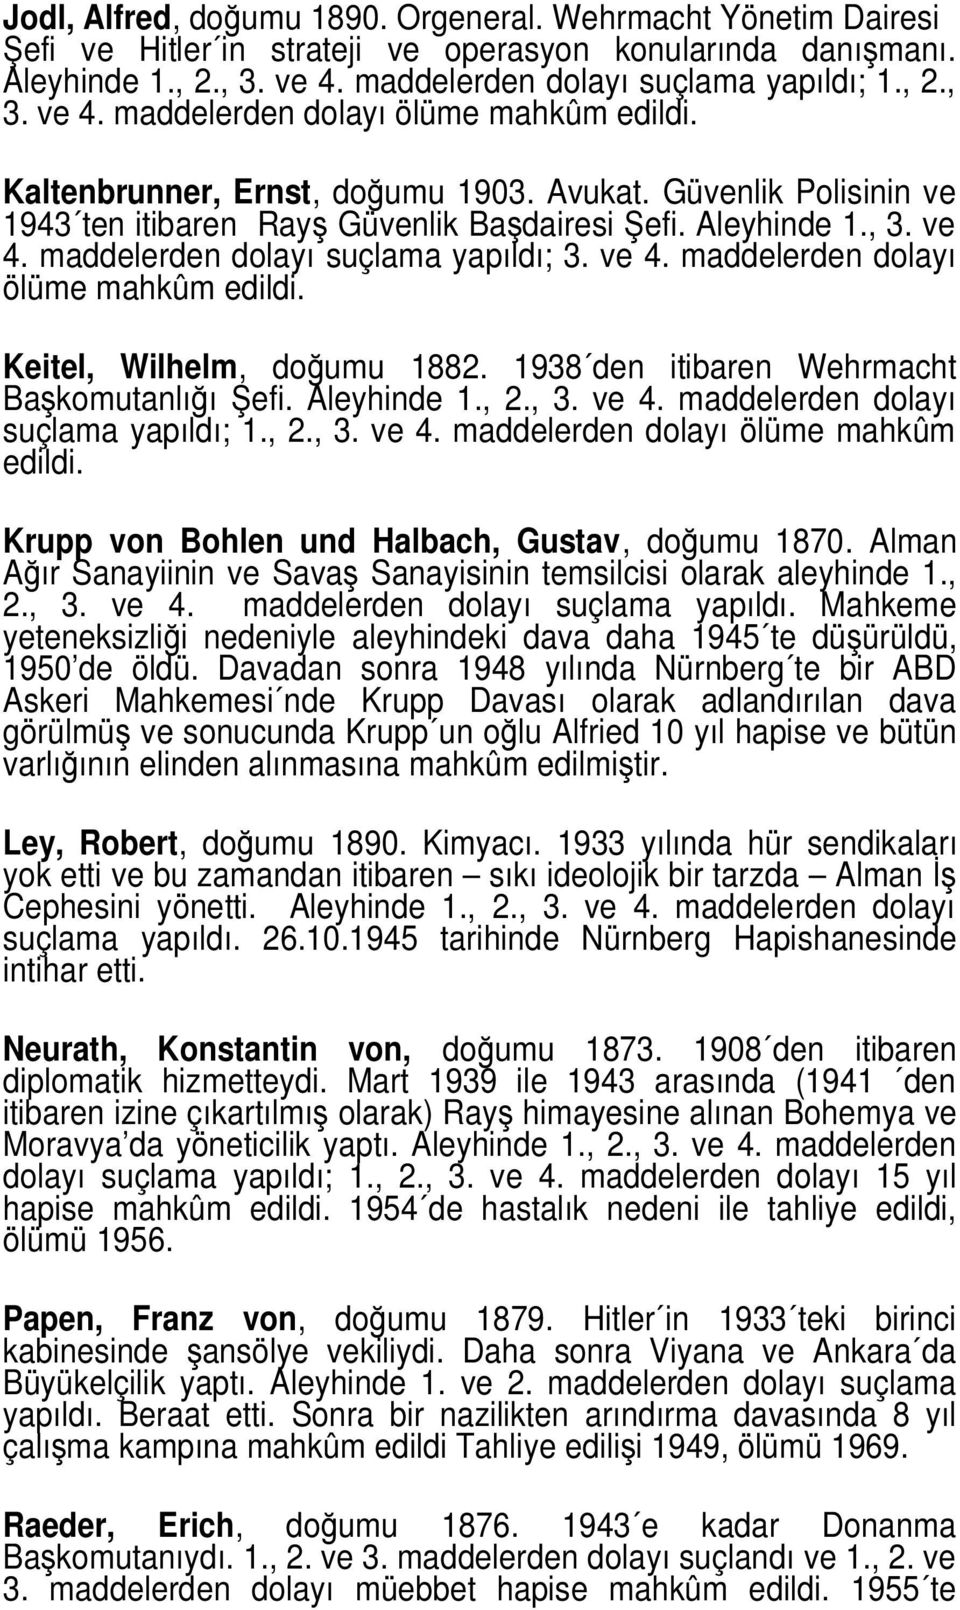 Keitel, Wilhelm, doğumu 1882. 1938 den itibaren Wehrmacht Başkomutanlığı Şefi. Aleyhinde 1., 2., 3. ve 4. maddelerden dolayı suçlama yapıldı; 1., 2., 3. ve 4. maddelerden dolayı ölüme mahkûm edildi.